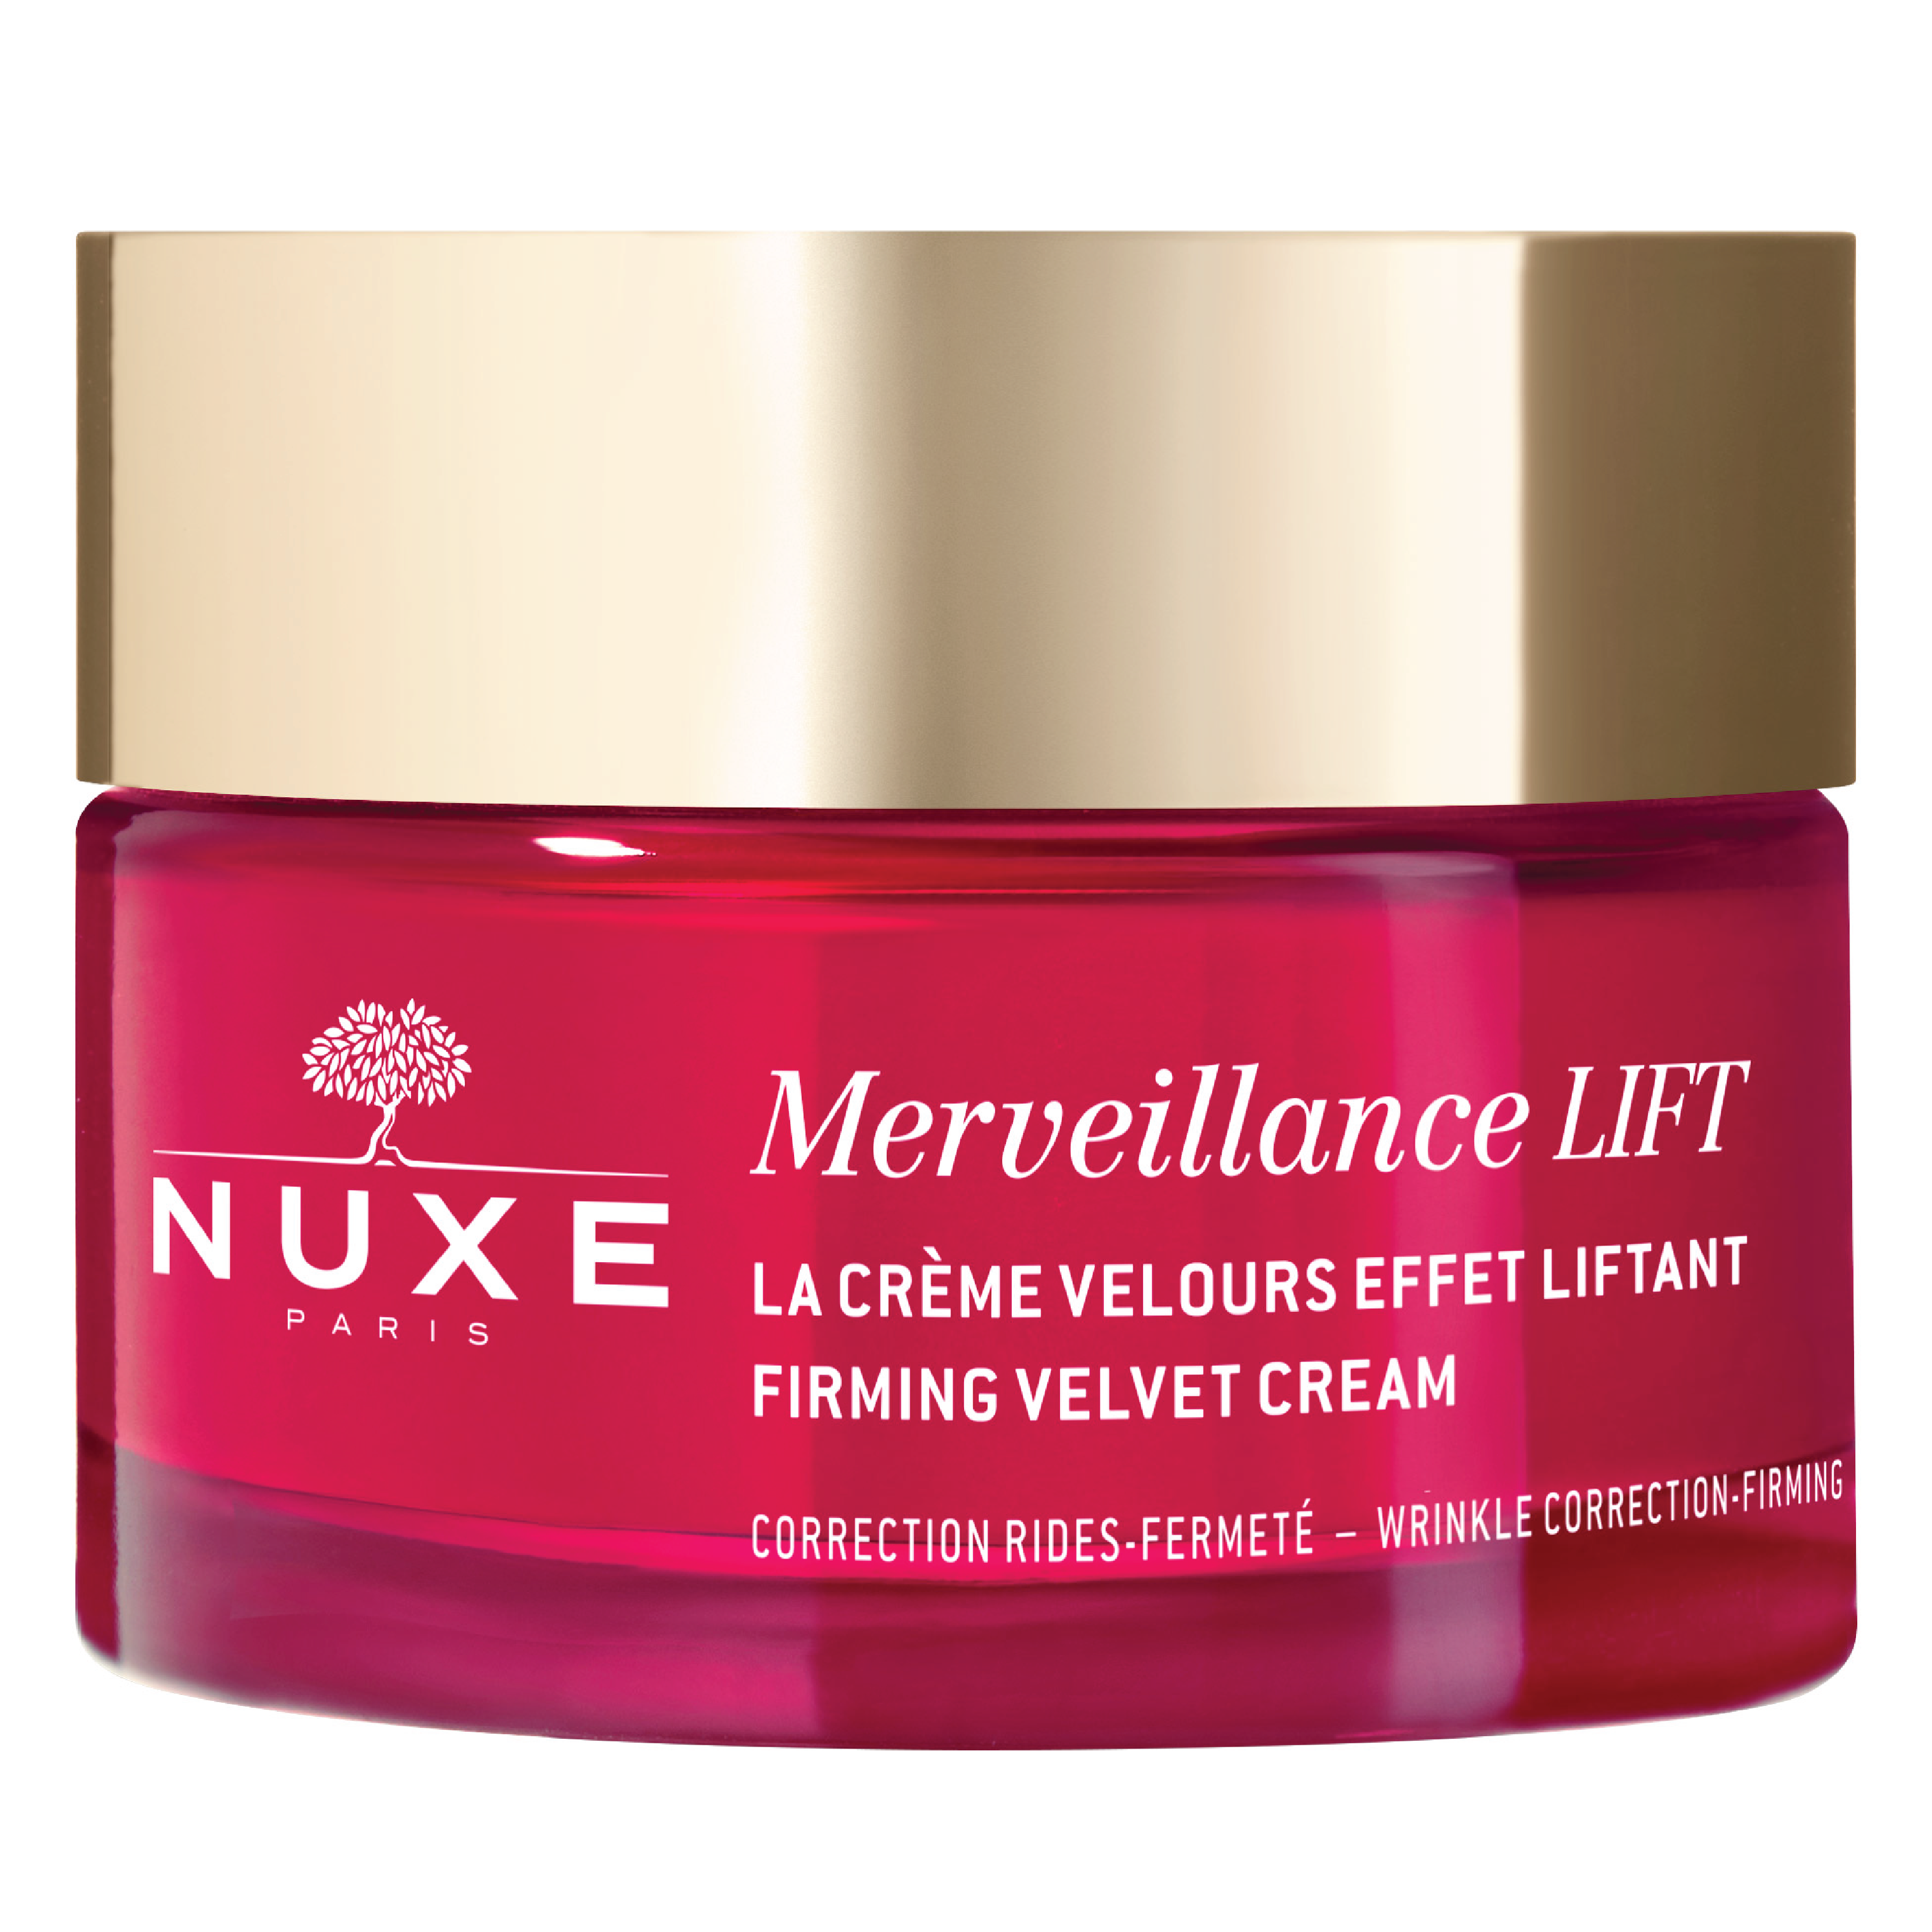 NUXE Merveillance Lift Firming Velvet Day Cream, 50 ml